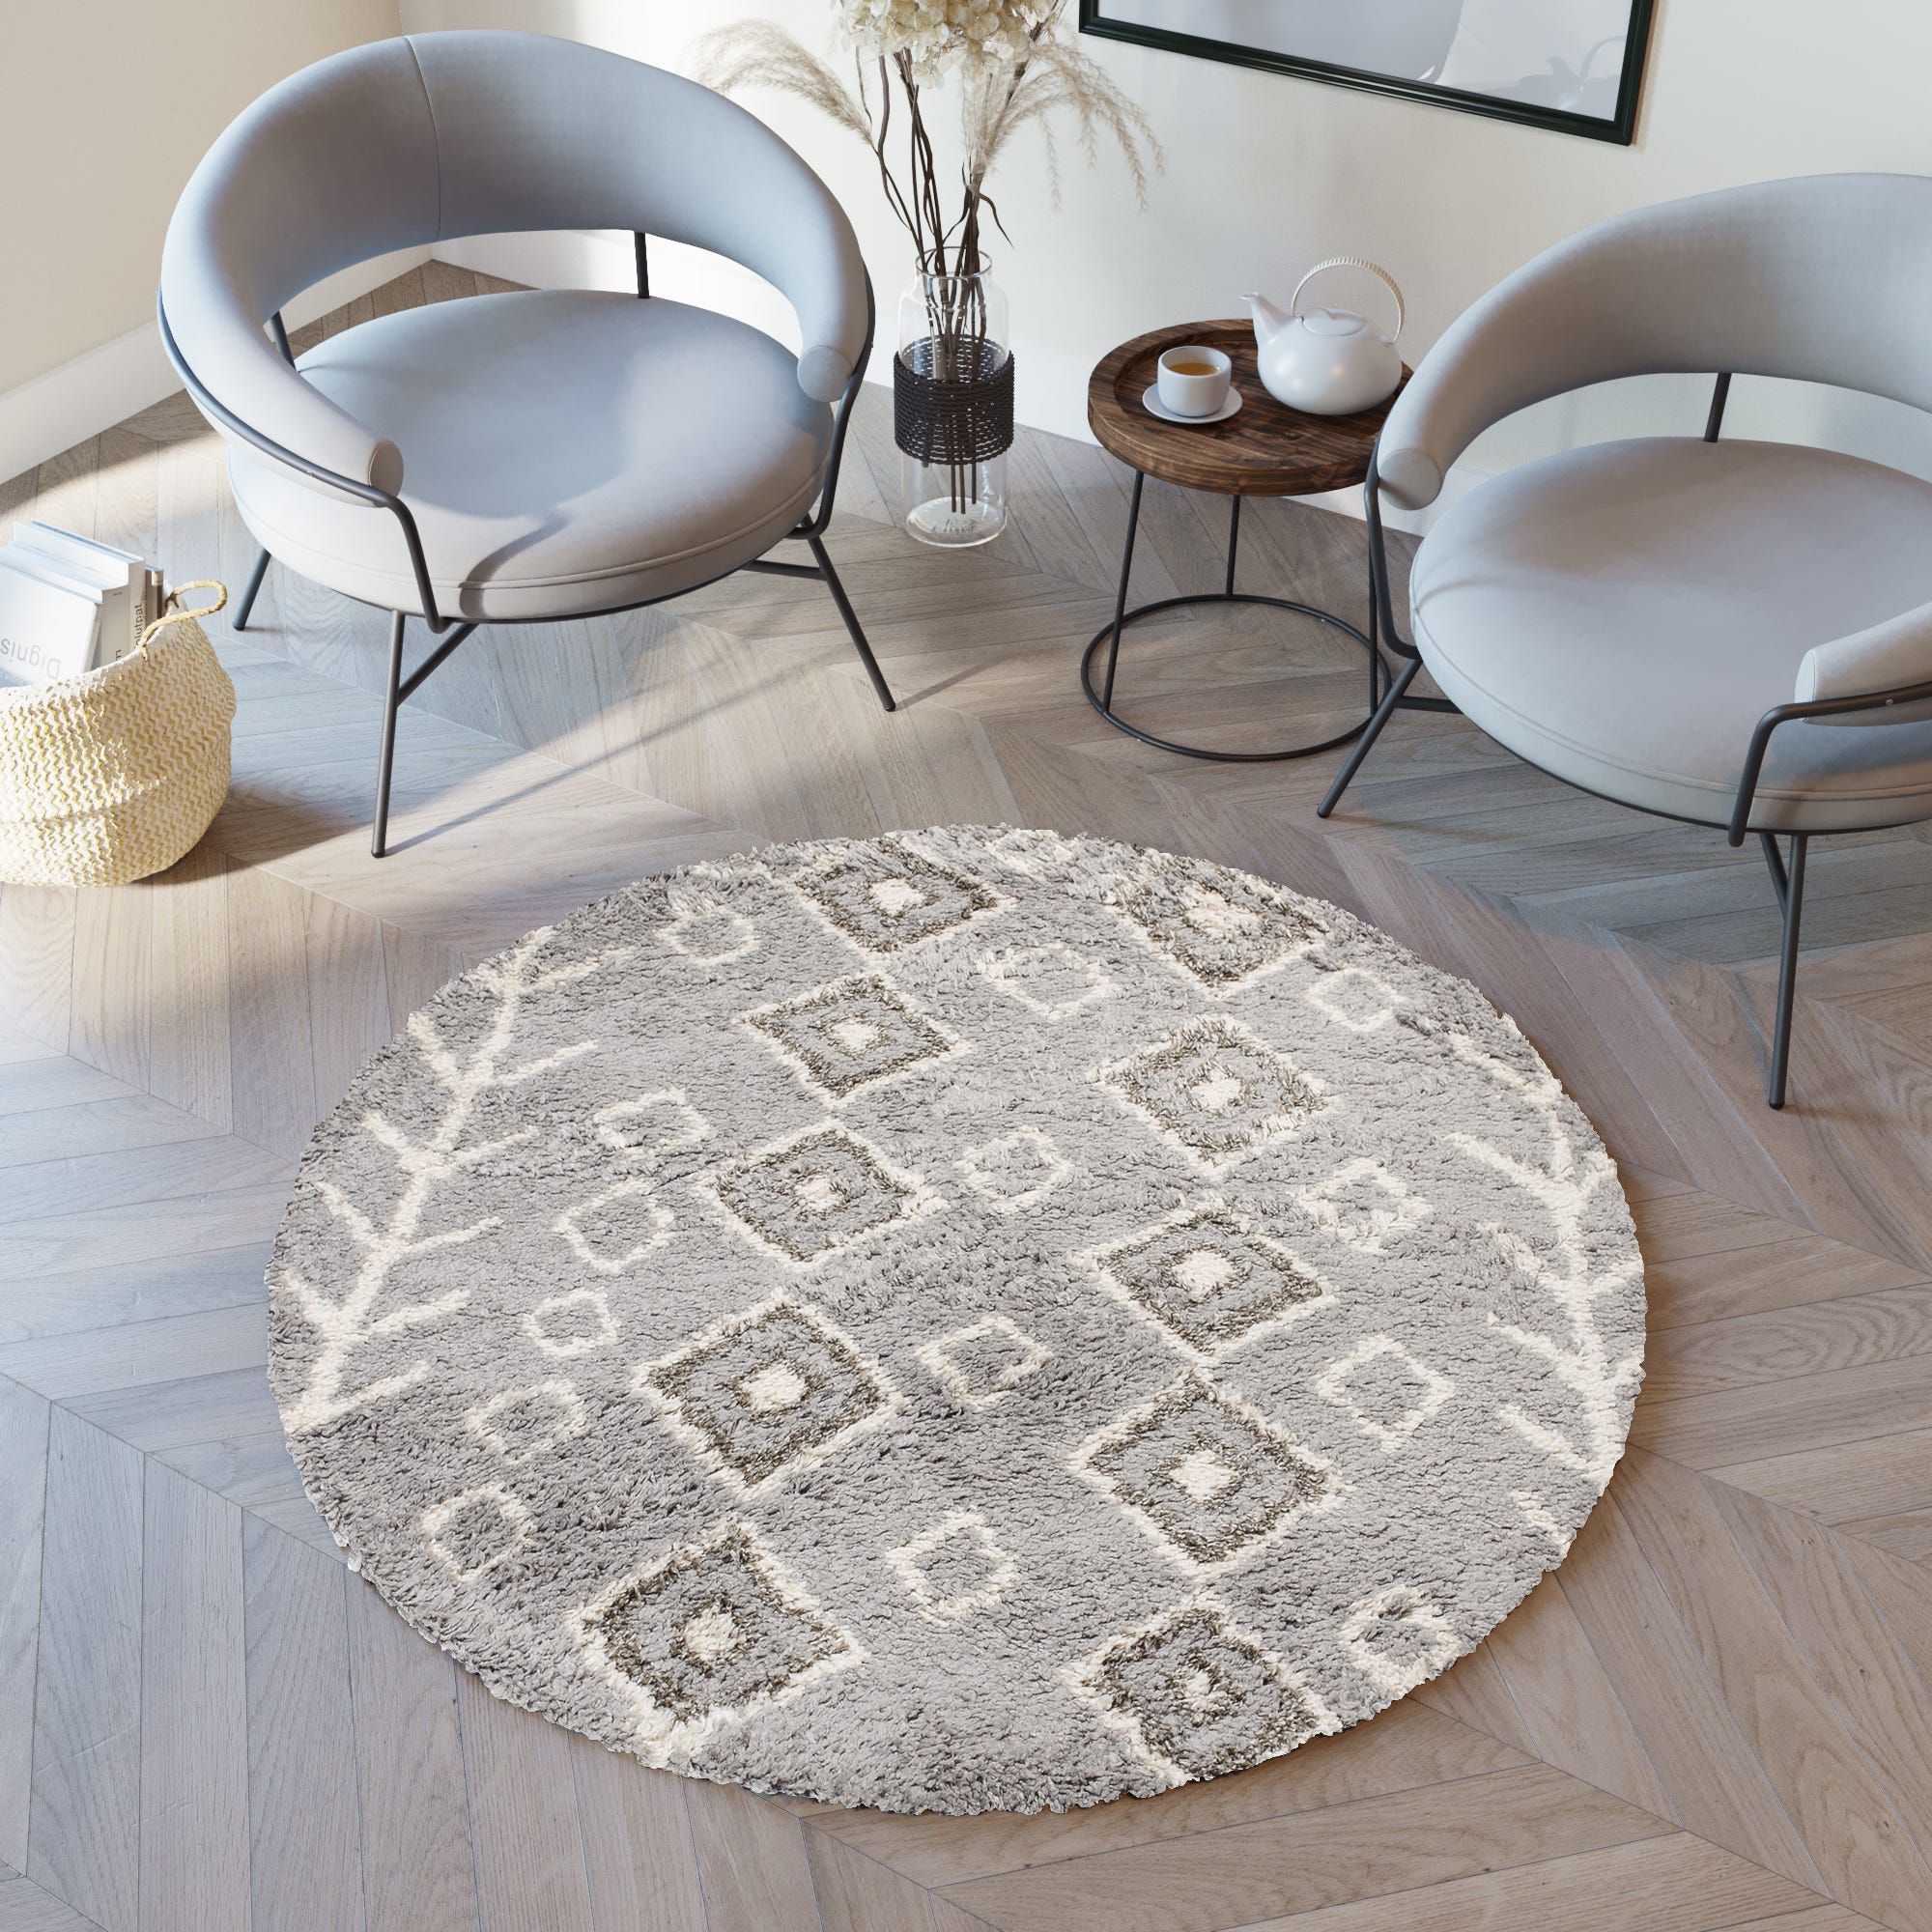 Cómo y cuándo utilizar alfombras redondas o cuadradas?